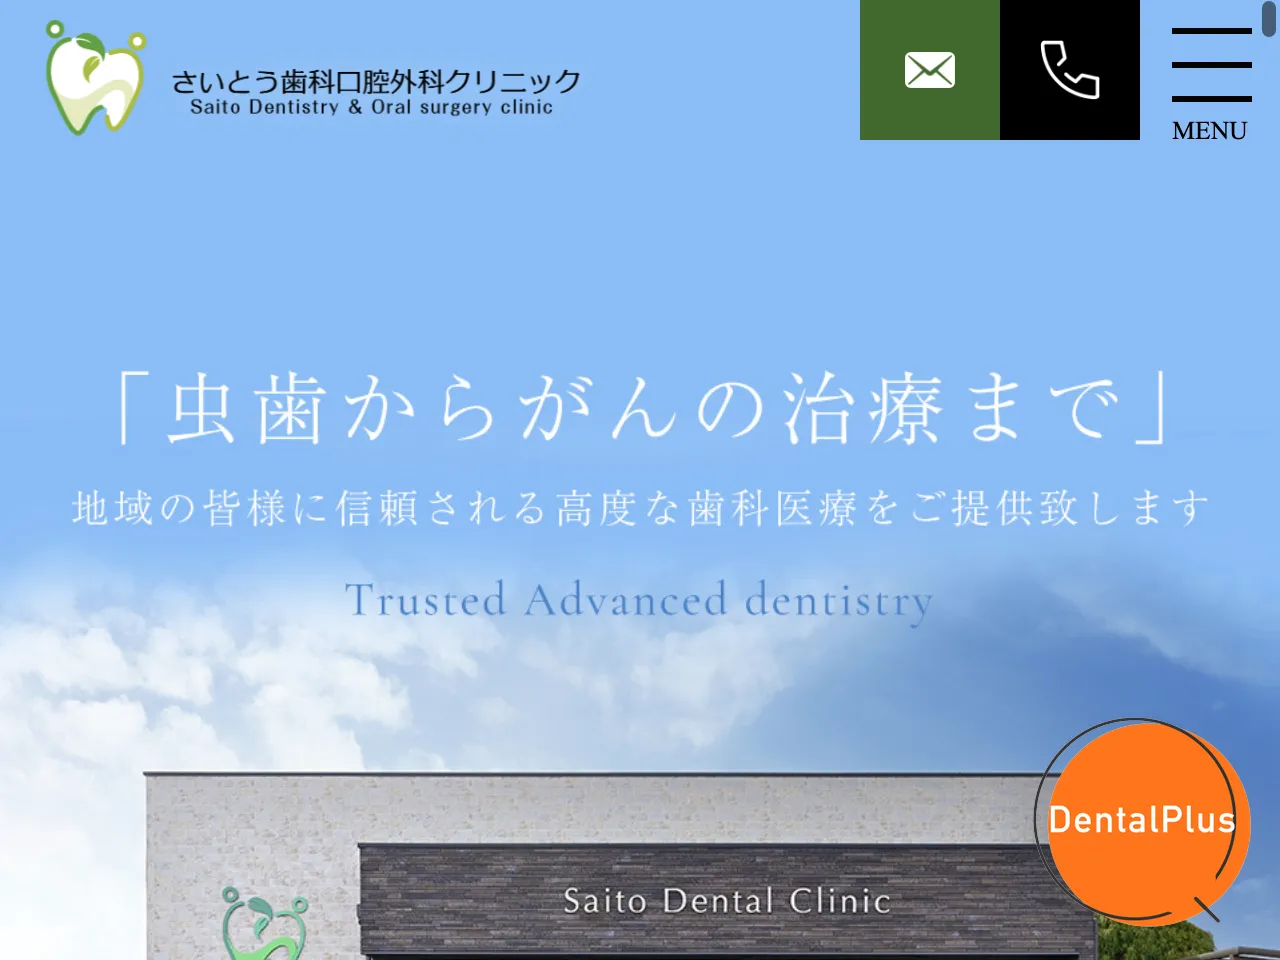 さいとう歯科口腔外科クリニックのウェブサイト